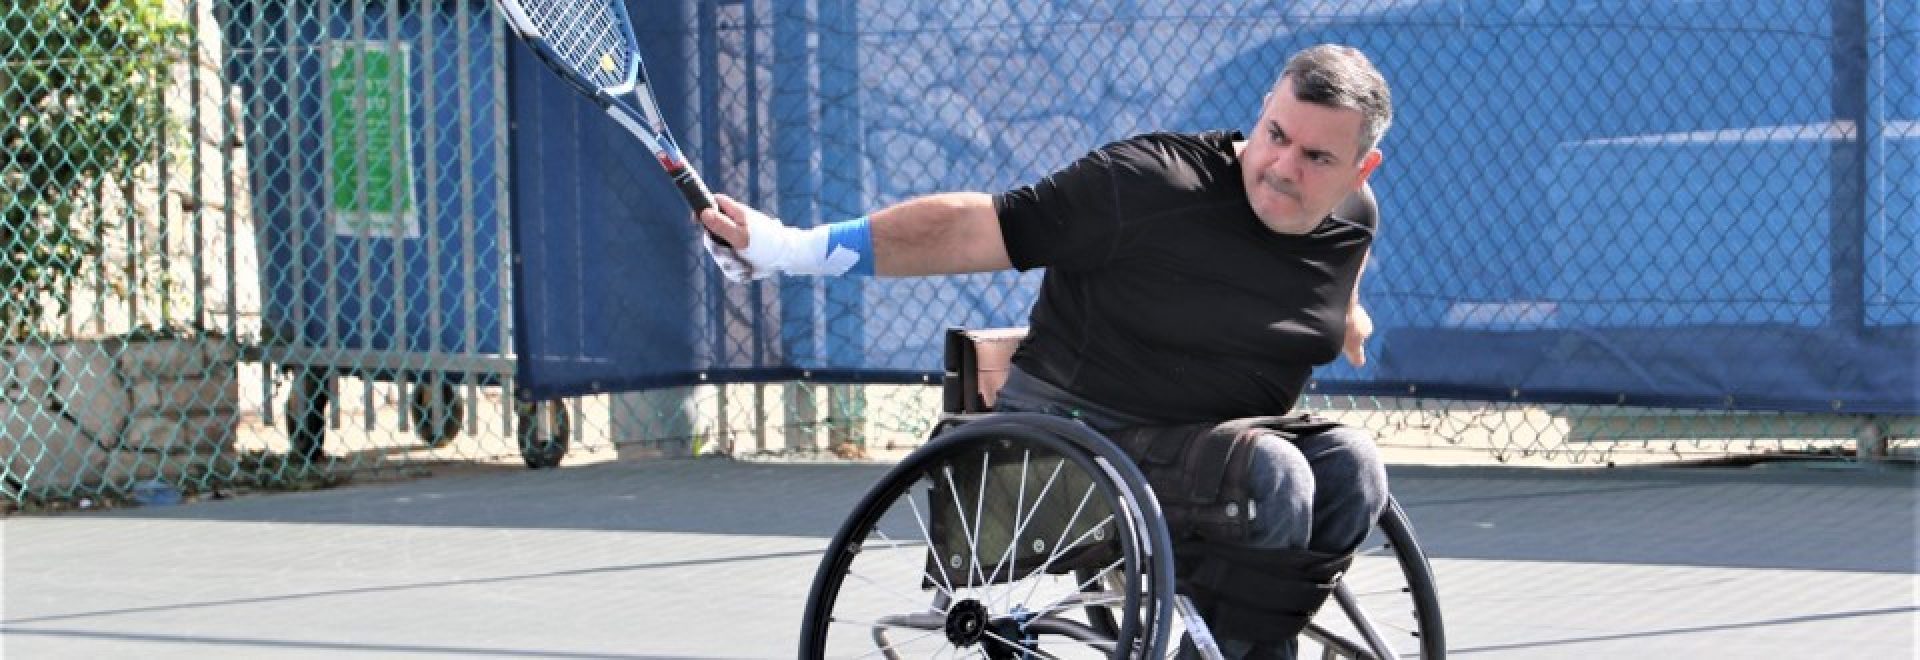 ספורטאי על כיסא גלגלים אוחז מחבט טניס